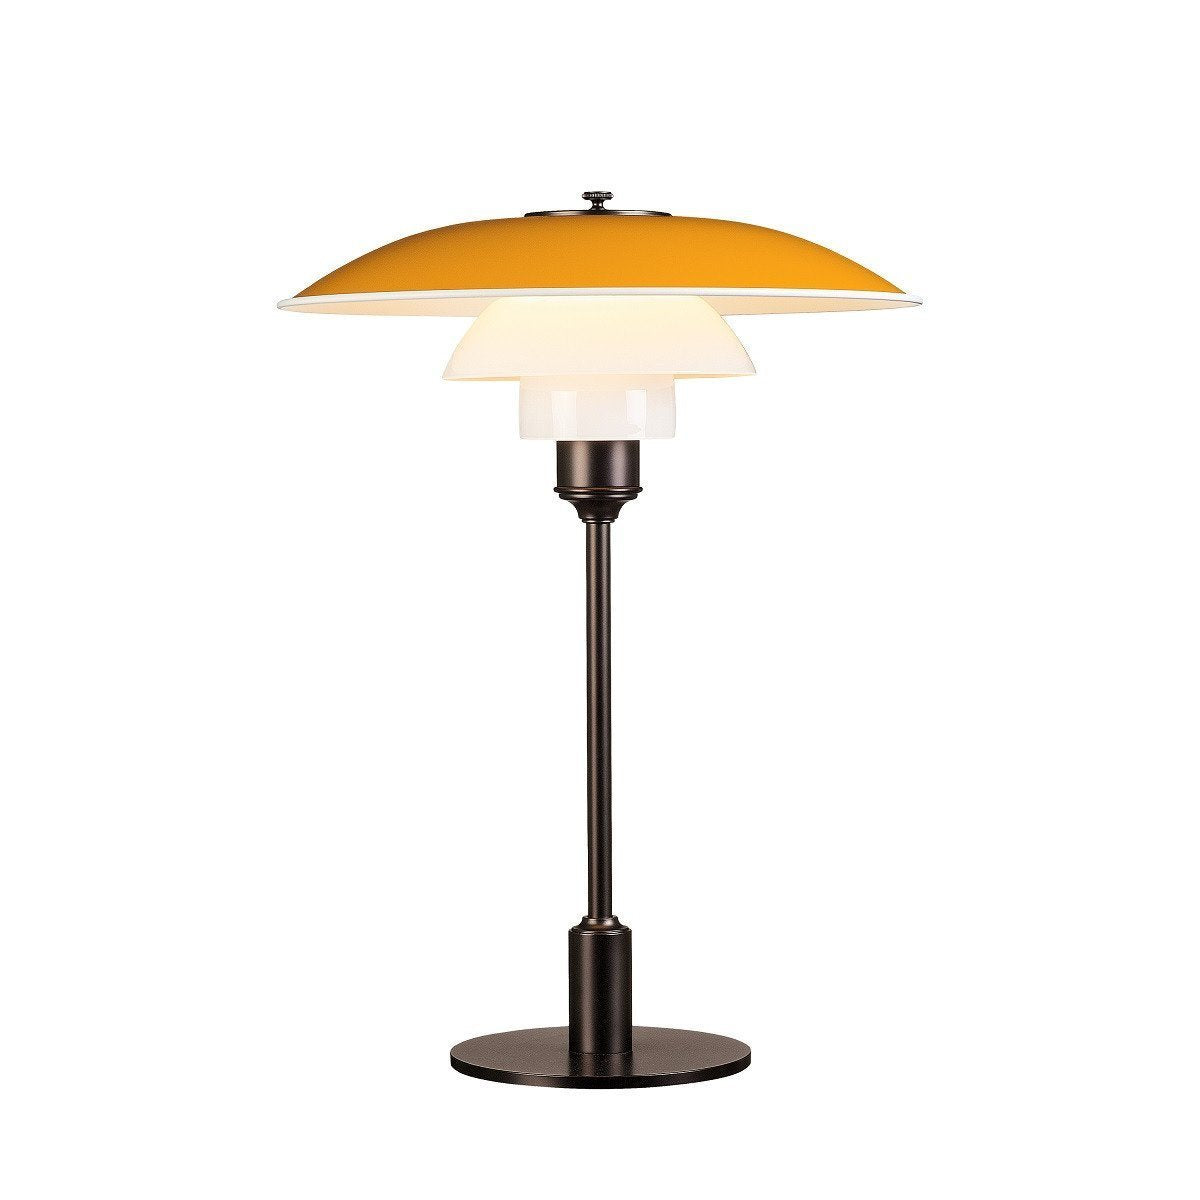 Louis Poulsen PH 3 1/2 2 1/2 lampe de table, jaune